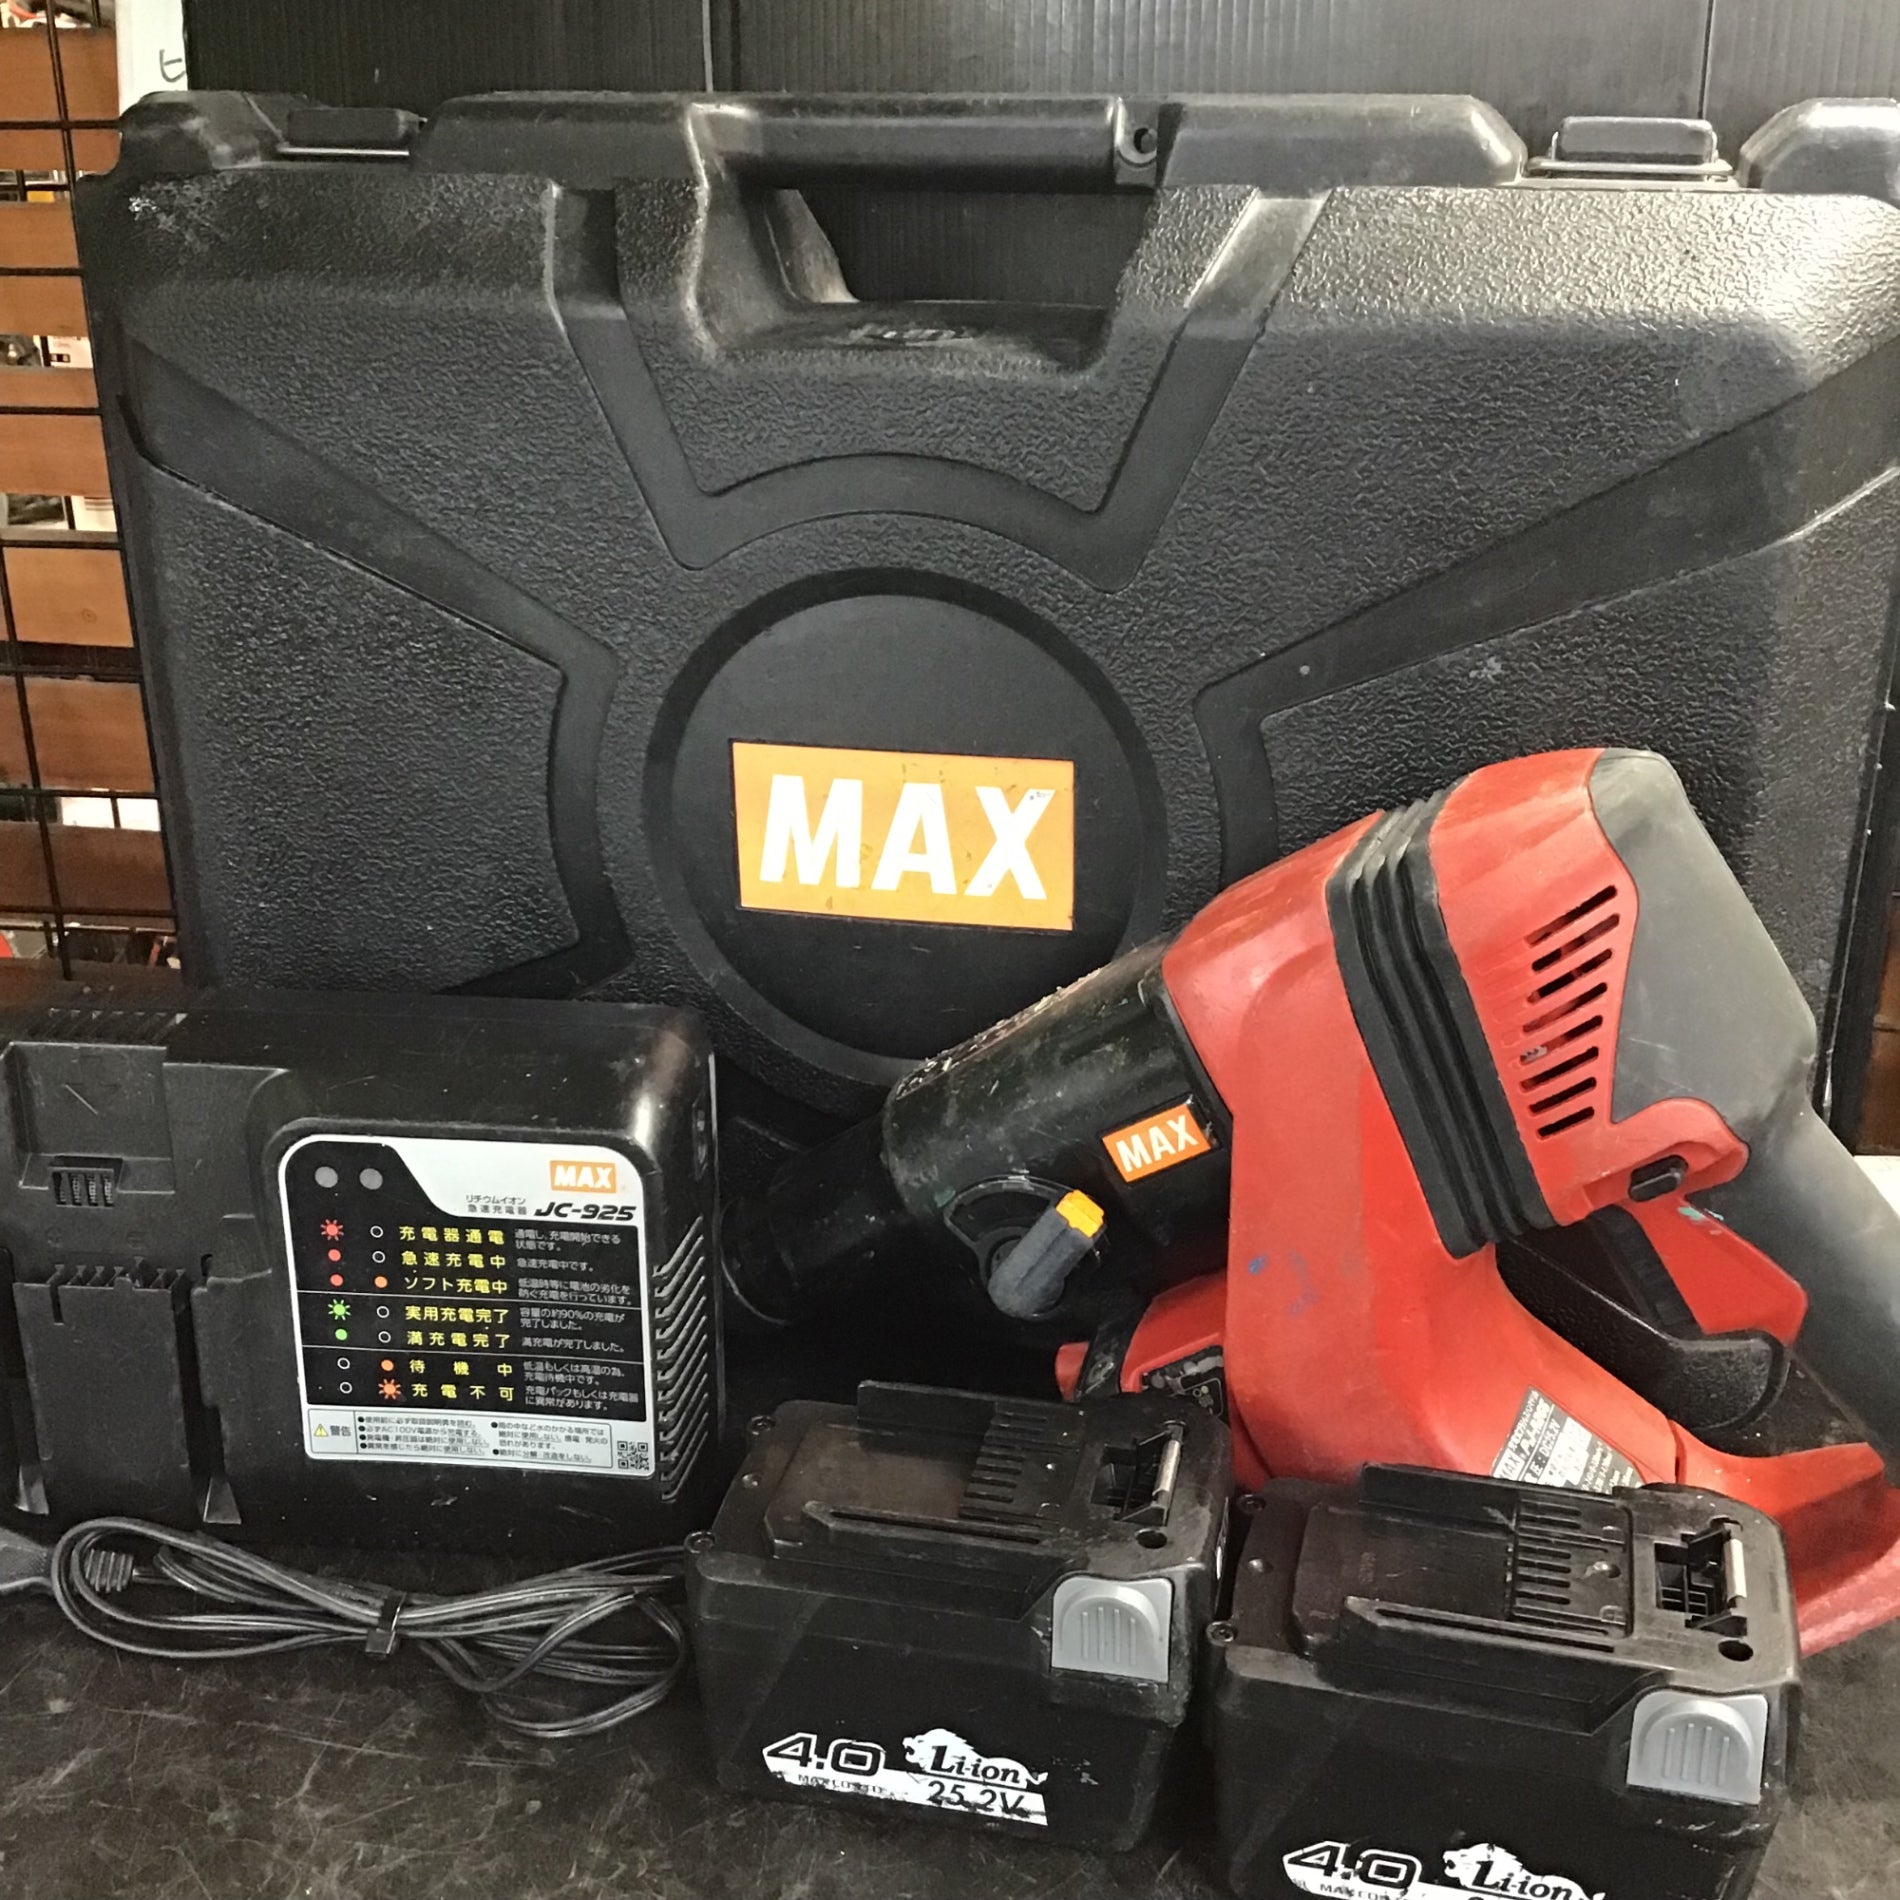 ☆マックス(MAX) コードレスハンマドリル PJ-R266-B2C/40A【草加店 